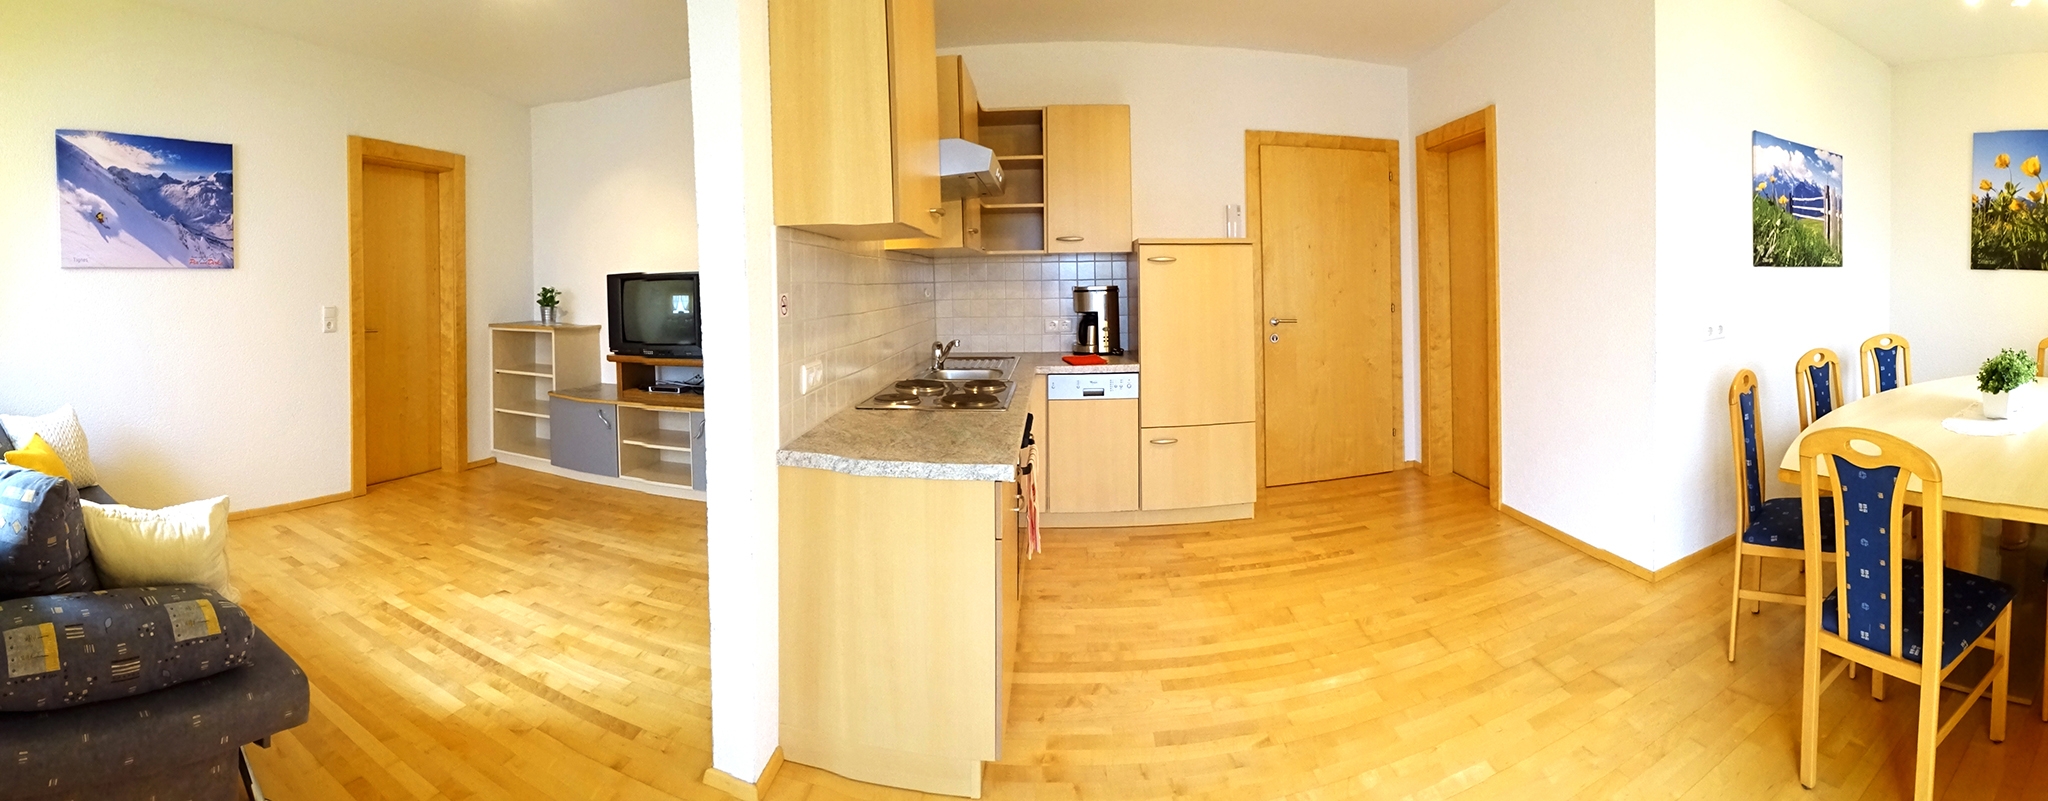 Appartementhaus Alpenjuwel: offene Komfort-Ferienwohnung für 11 Personen - Wohnbereich und Küchenzeile